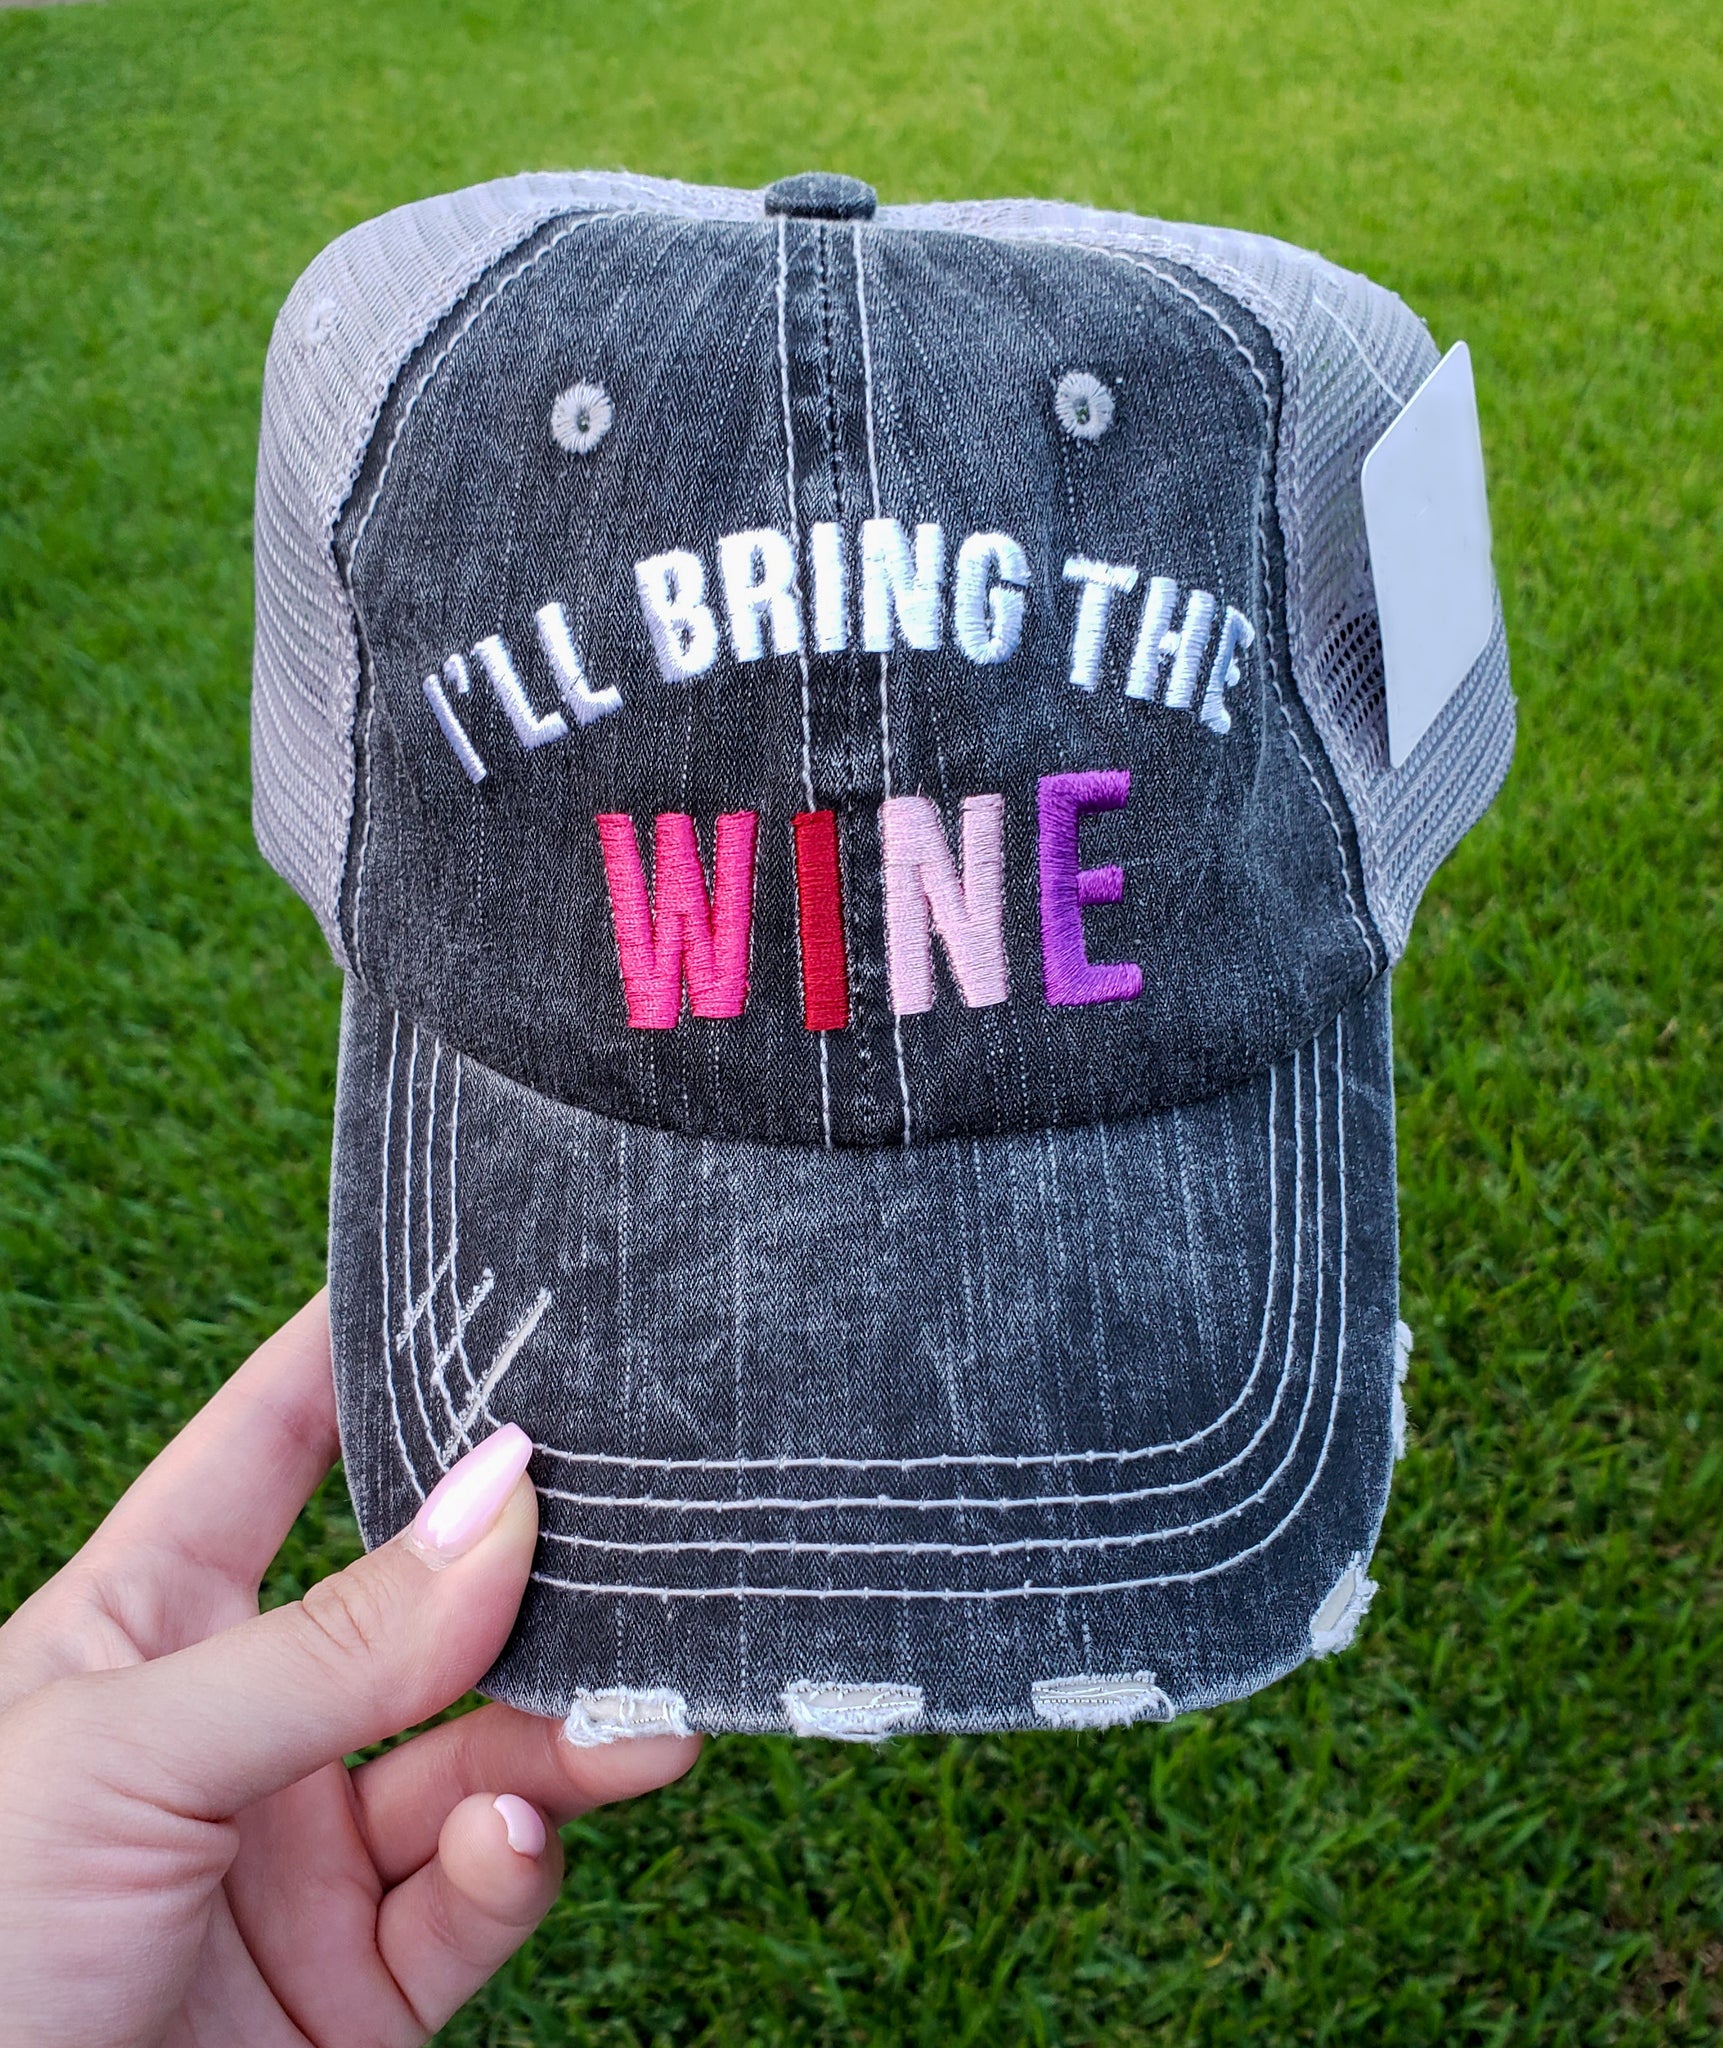 I'll Bring The Wine Trucker Cap